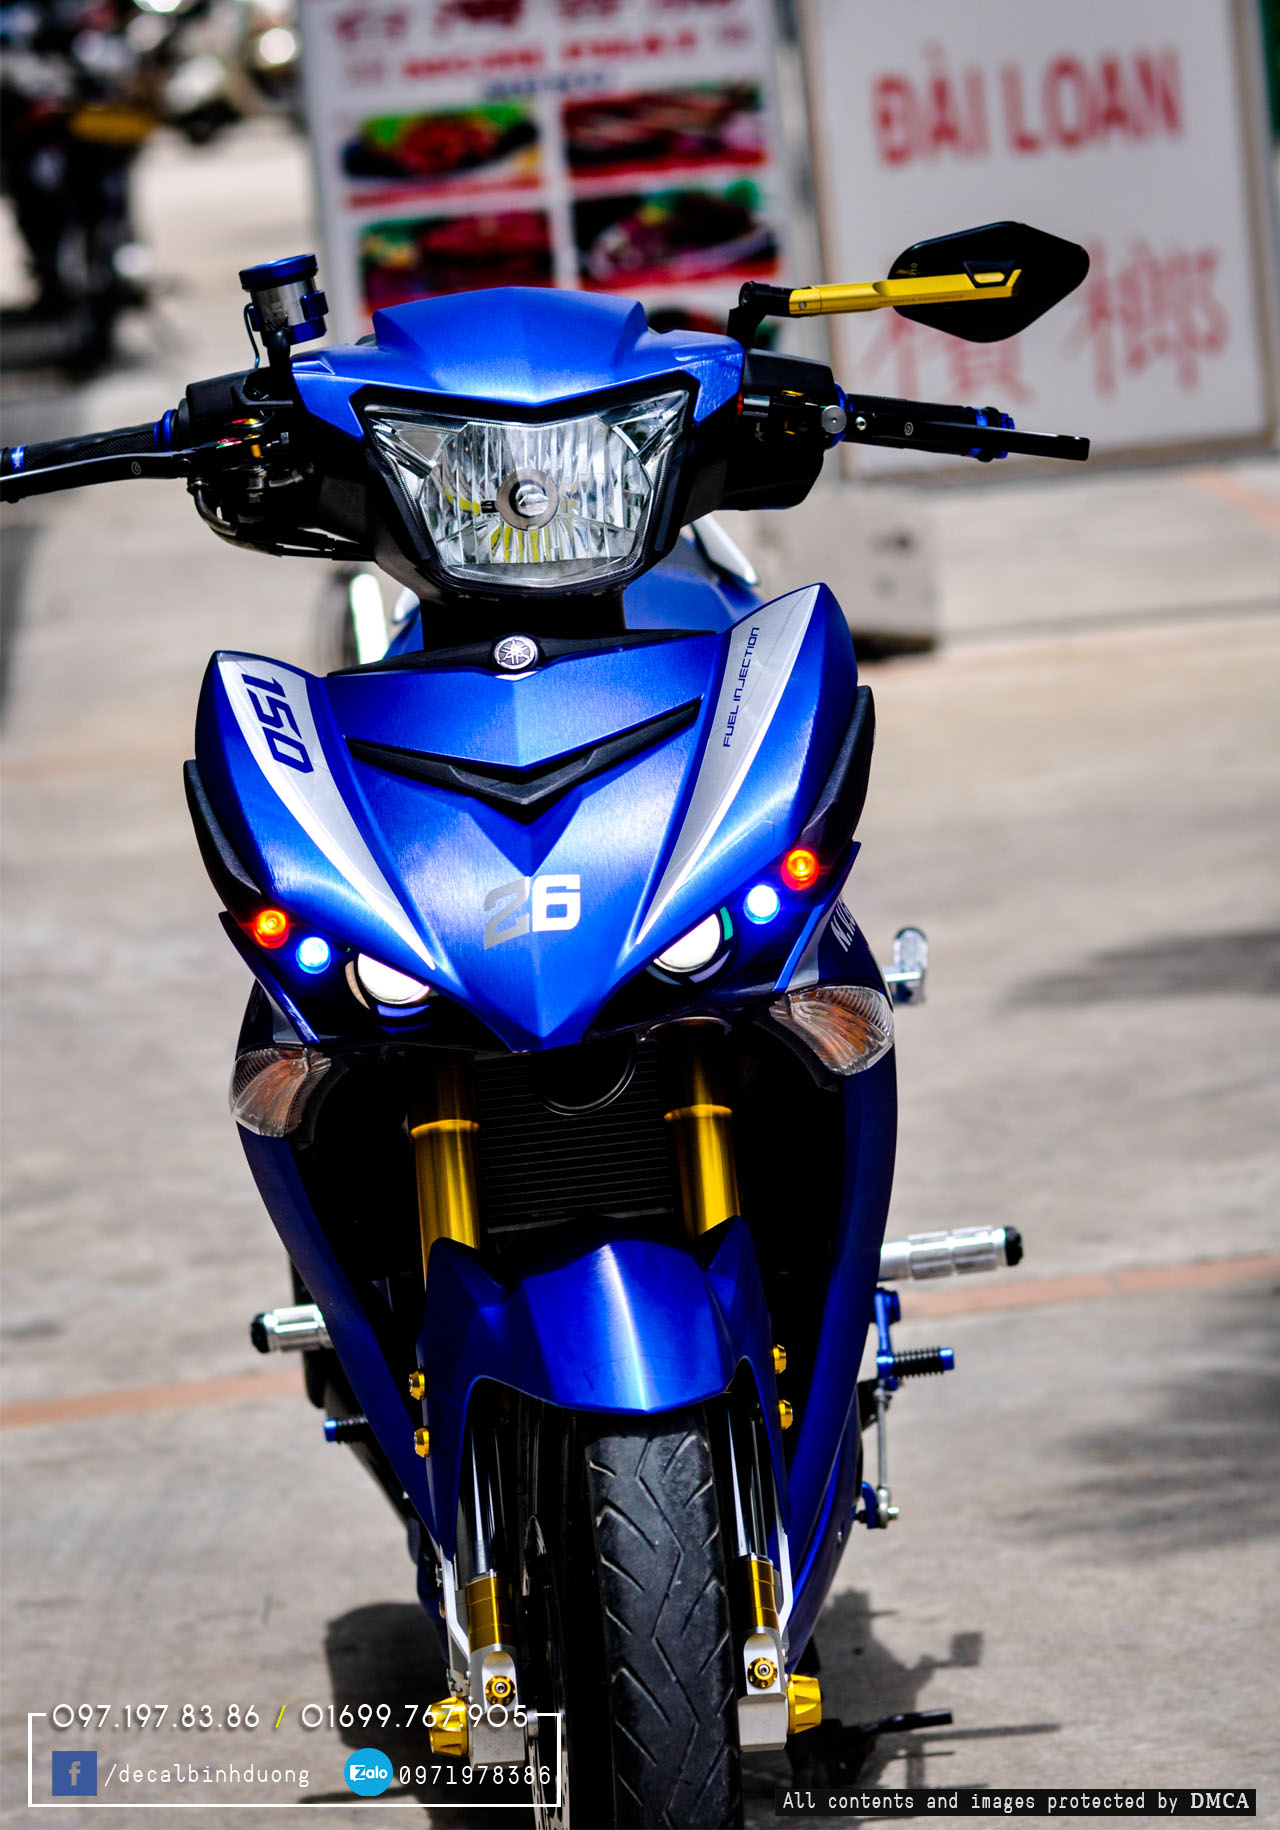 Ngắm Exciter 150 độ sơn chuyển màu xanh dươngtím của biker Trà Vinh   MuasamXecom